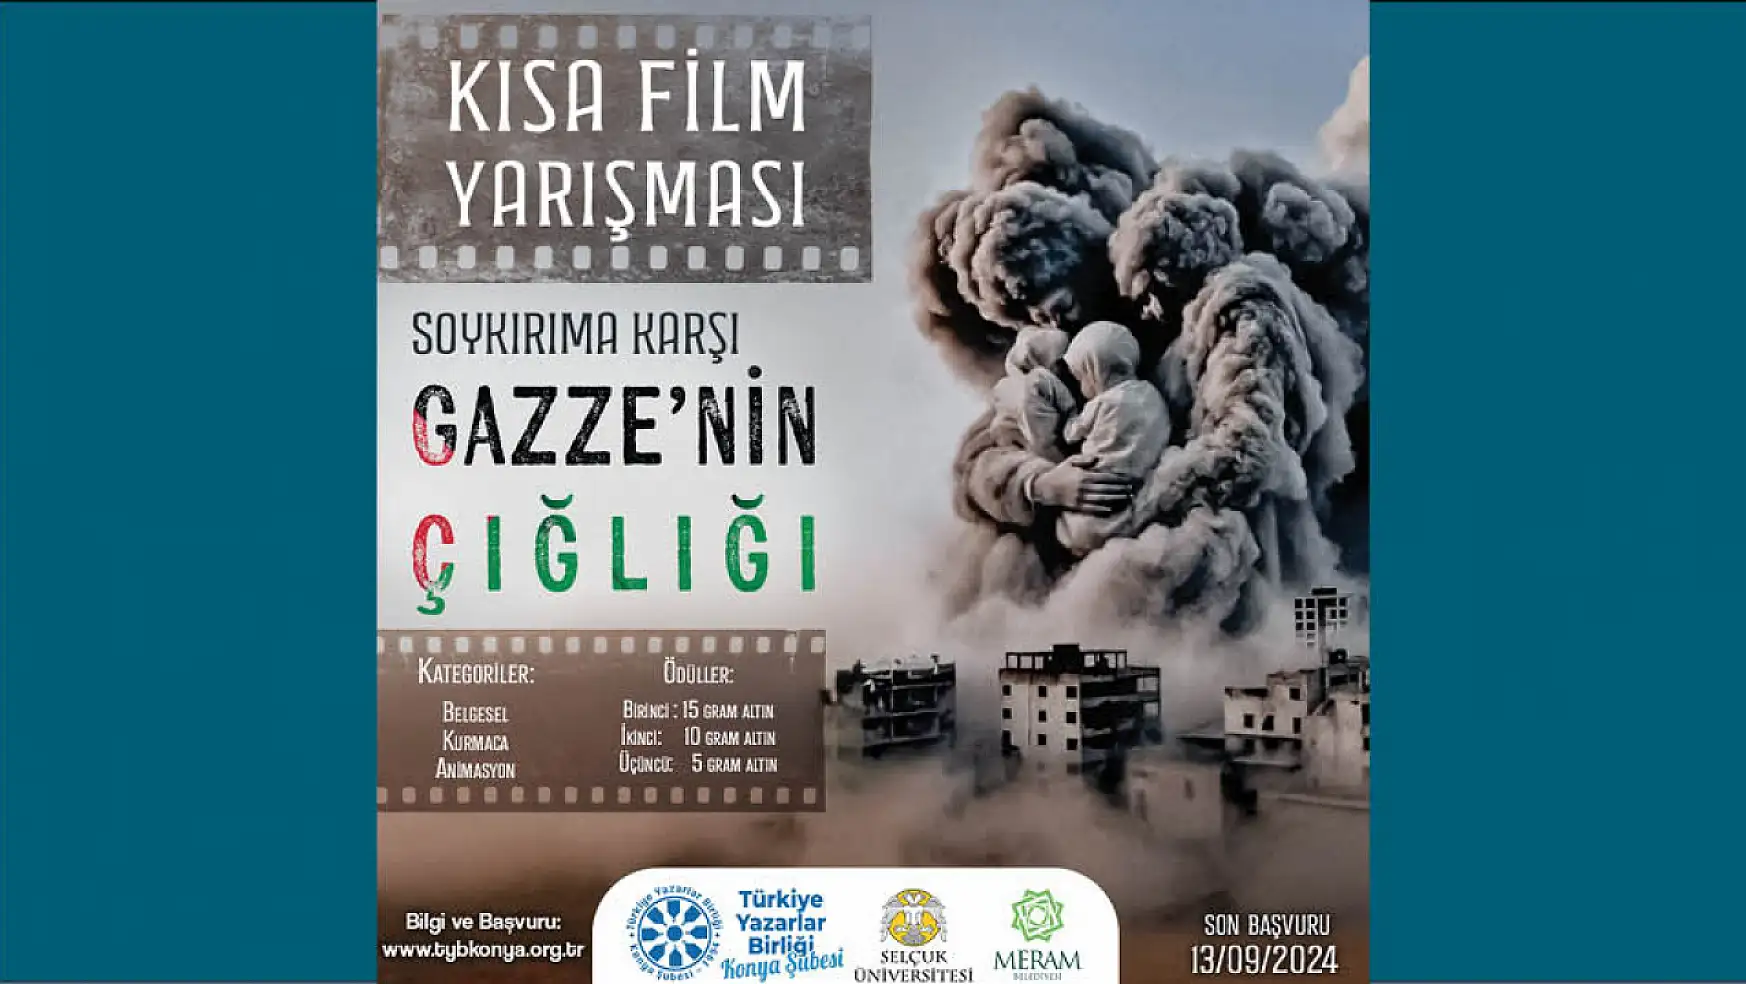 Konya'da Gazze konulu kısa film yarışması düzenlenecek!